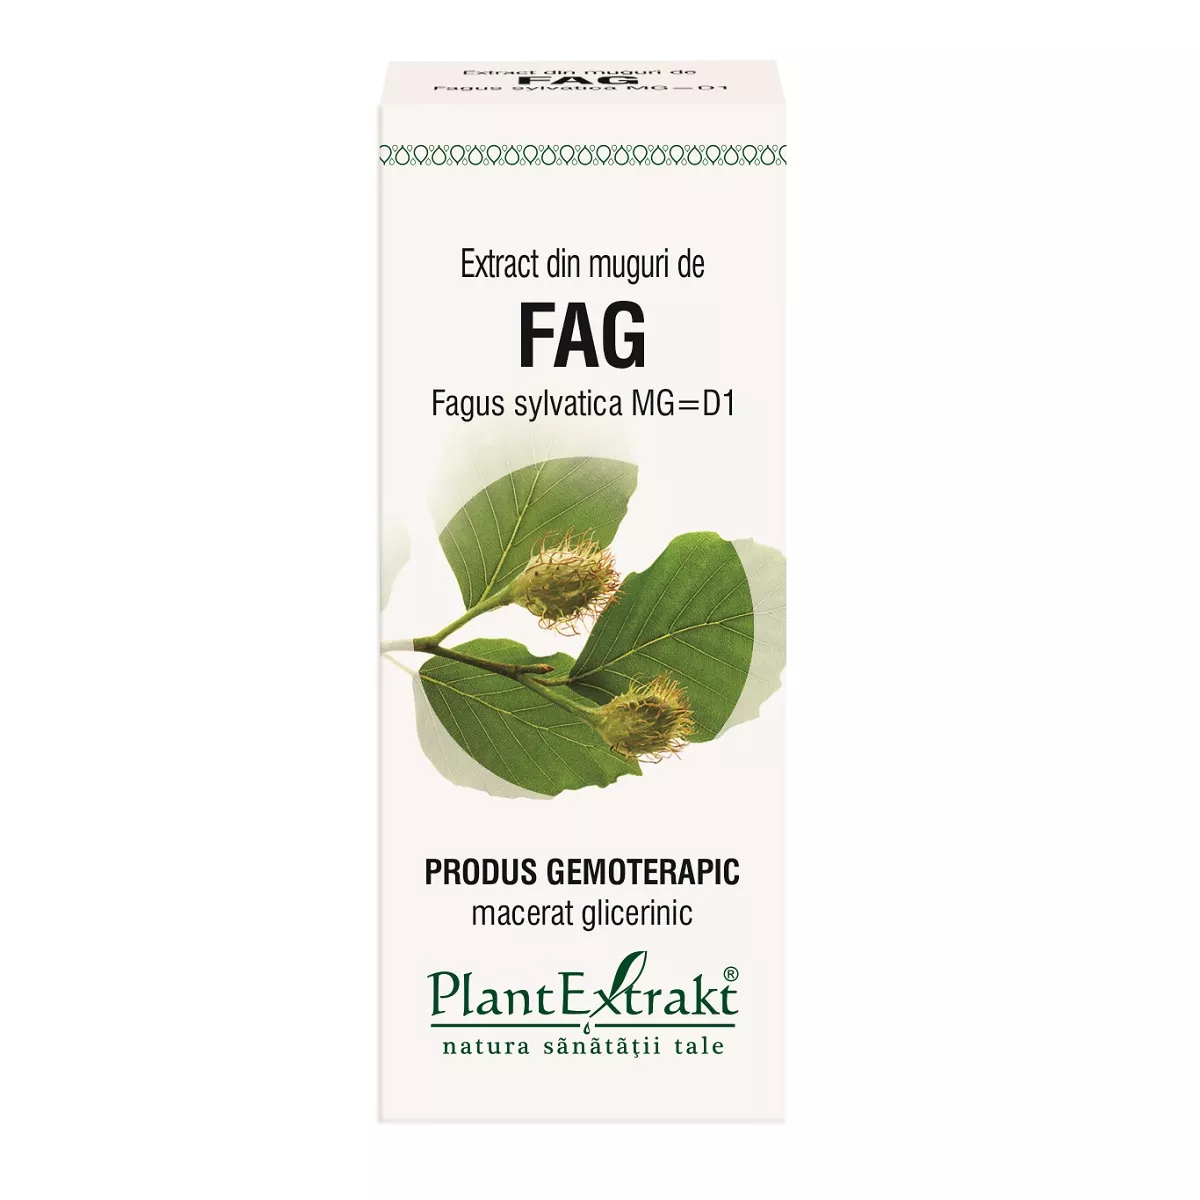 Extract din muguri de fag, 50 ml, Plantextrakt, [],remediumfarm.ro